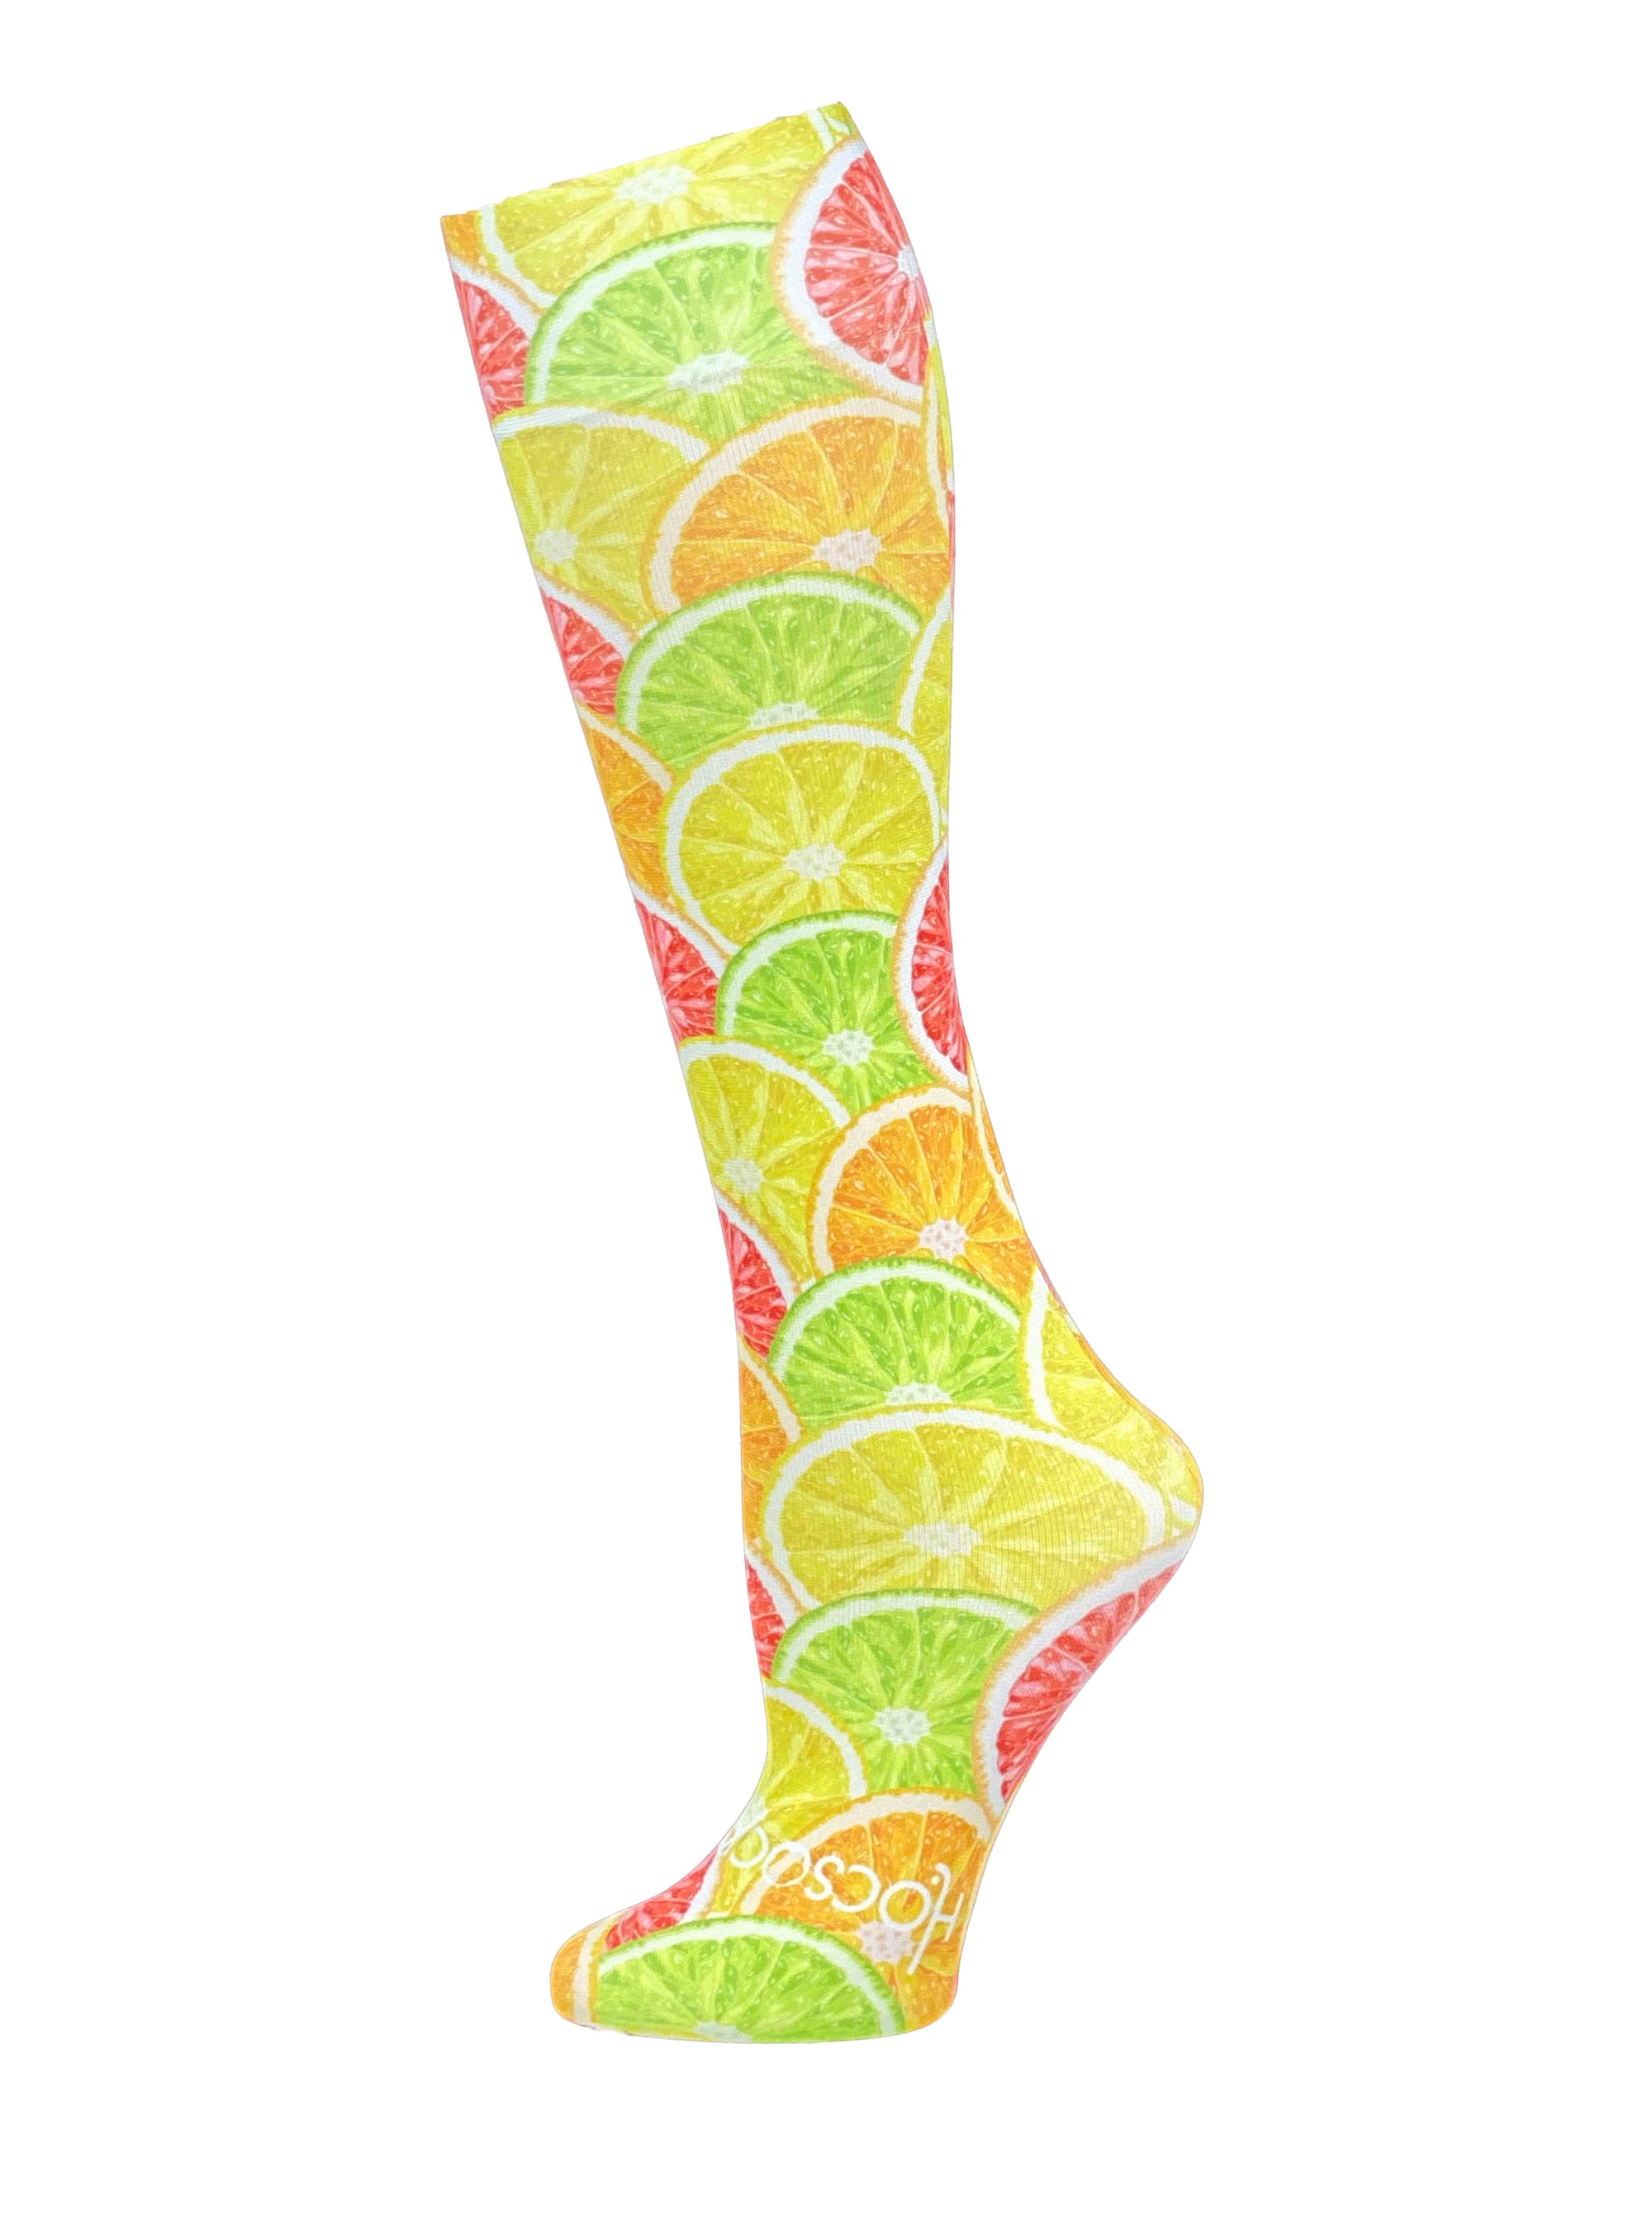 Citrus Slice Socks